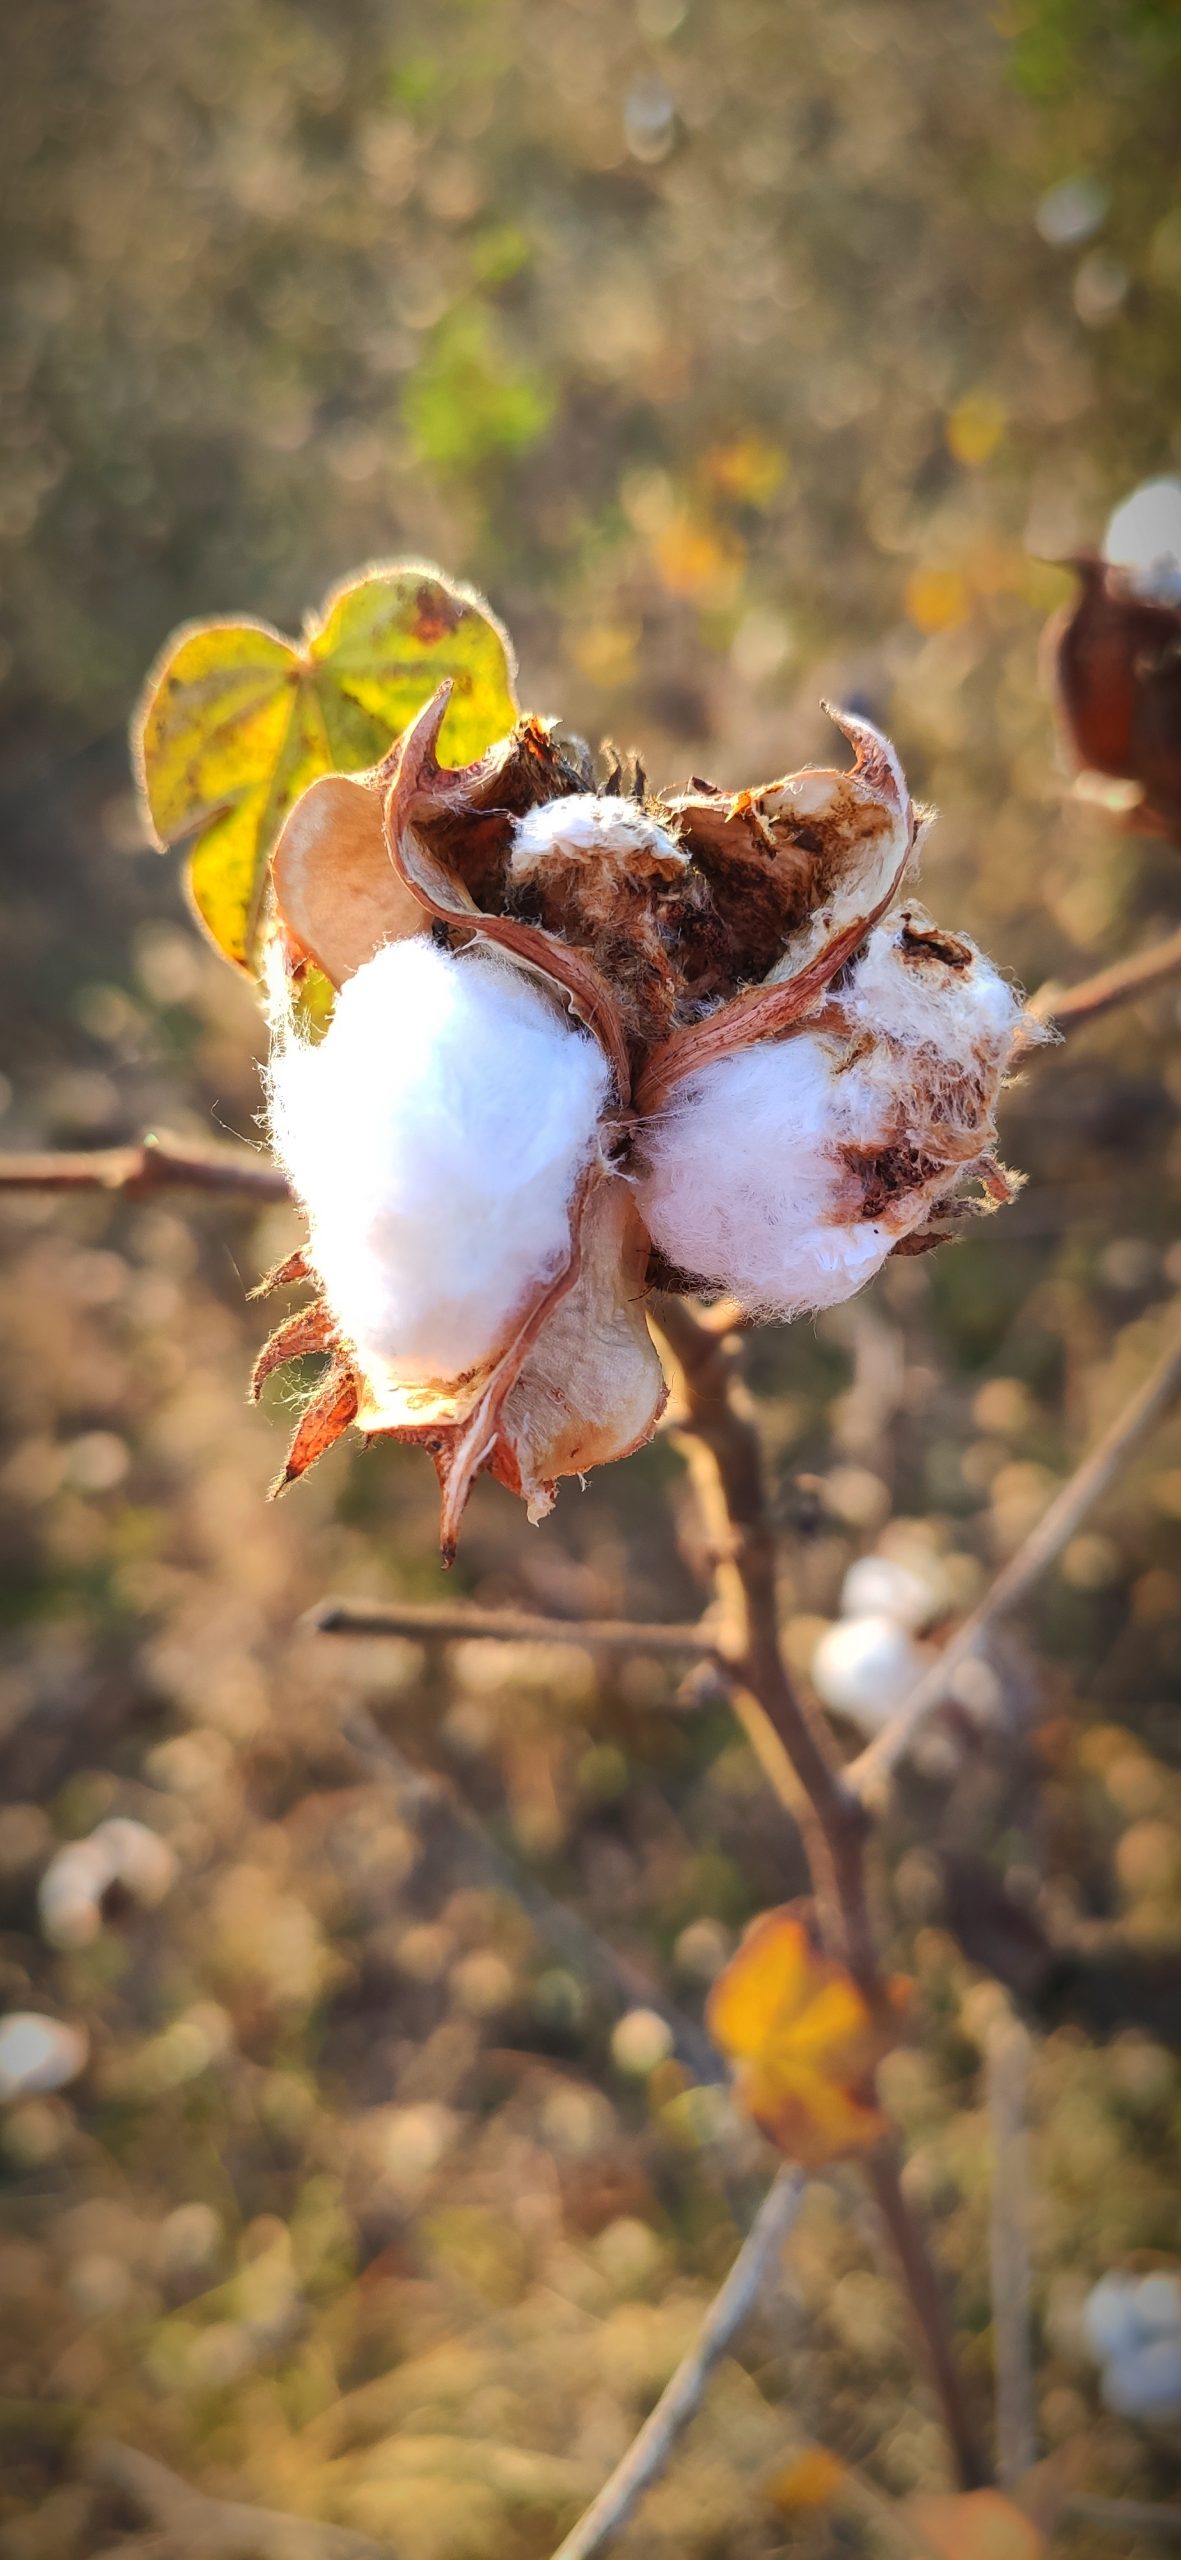 A cotton plant